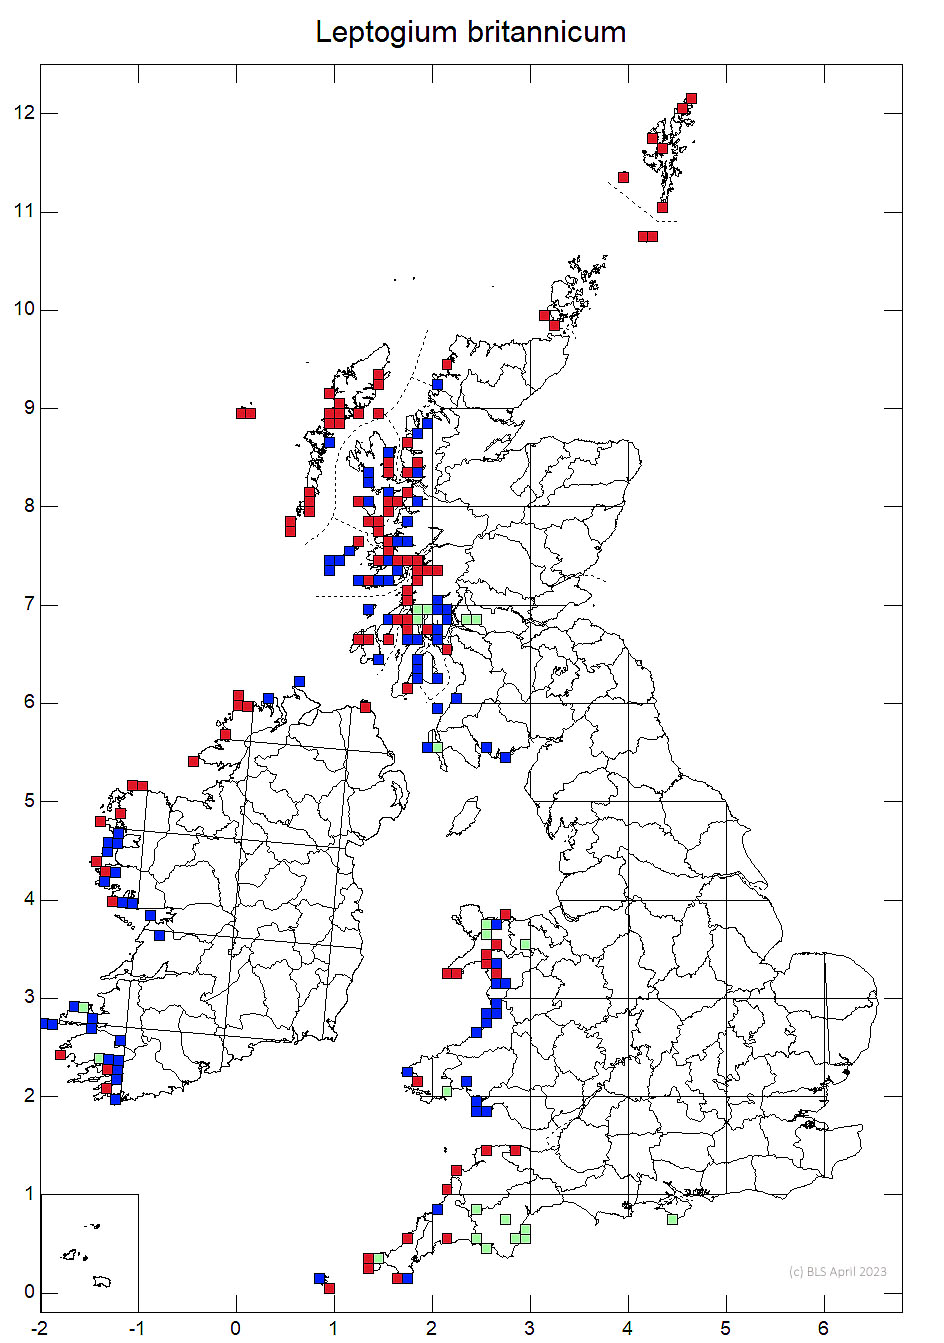 Leptogium britannicum 10km sq distribution map